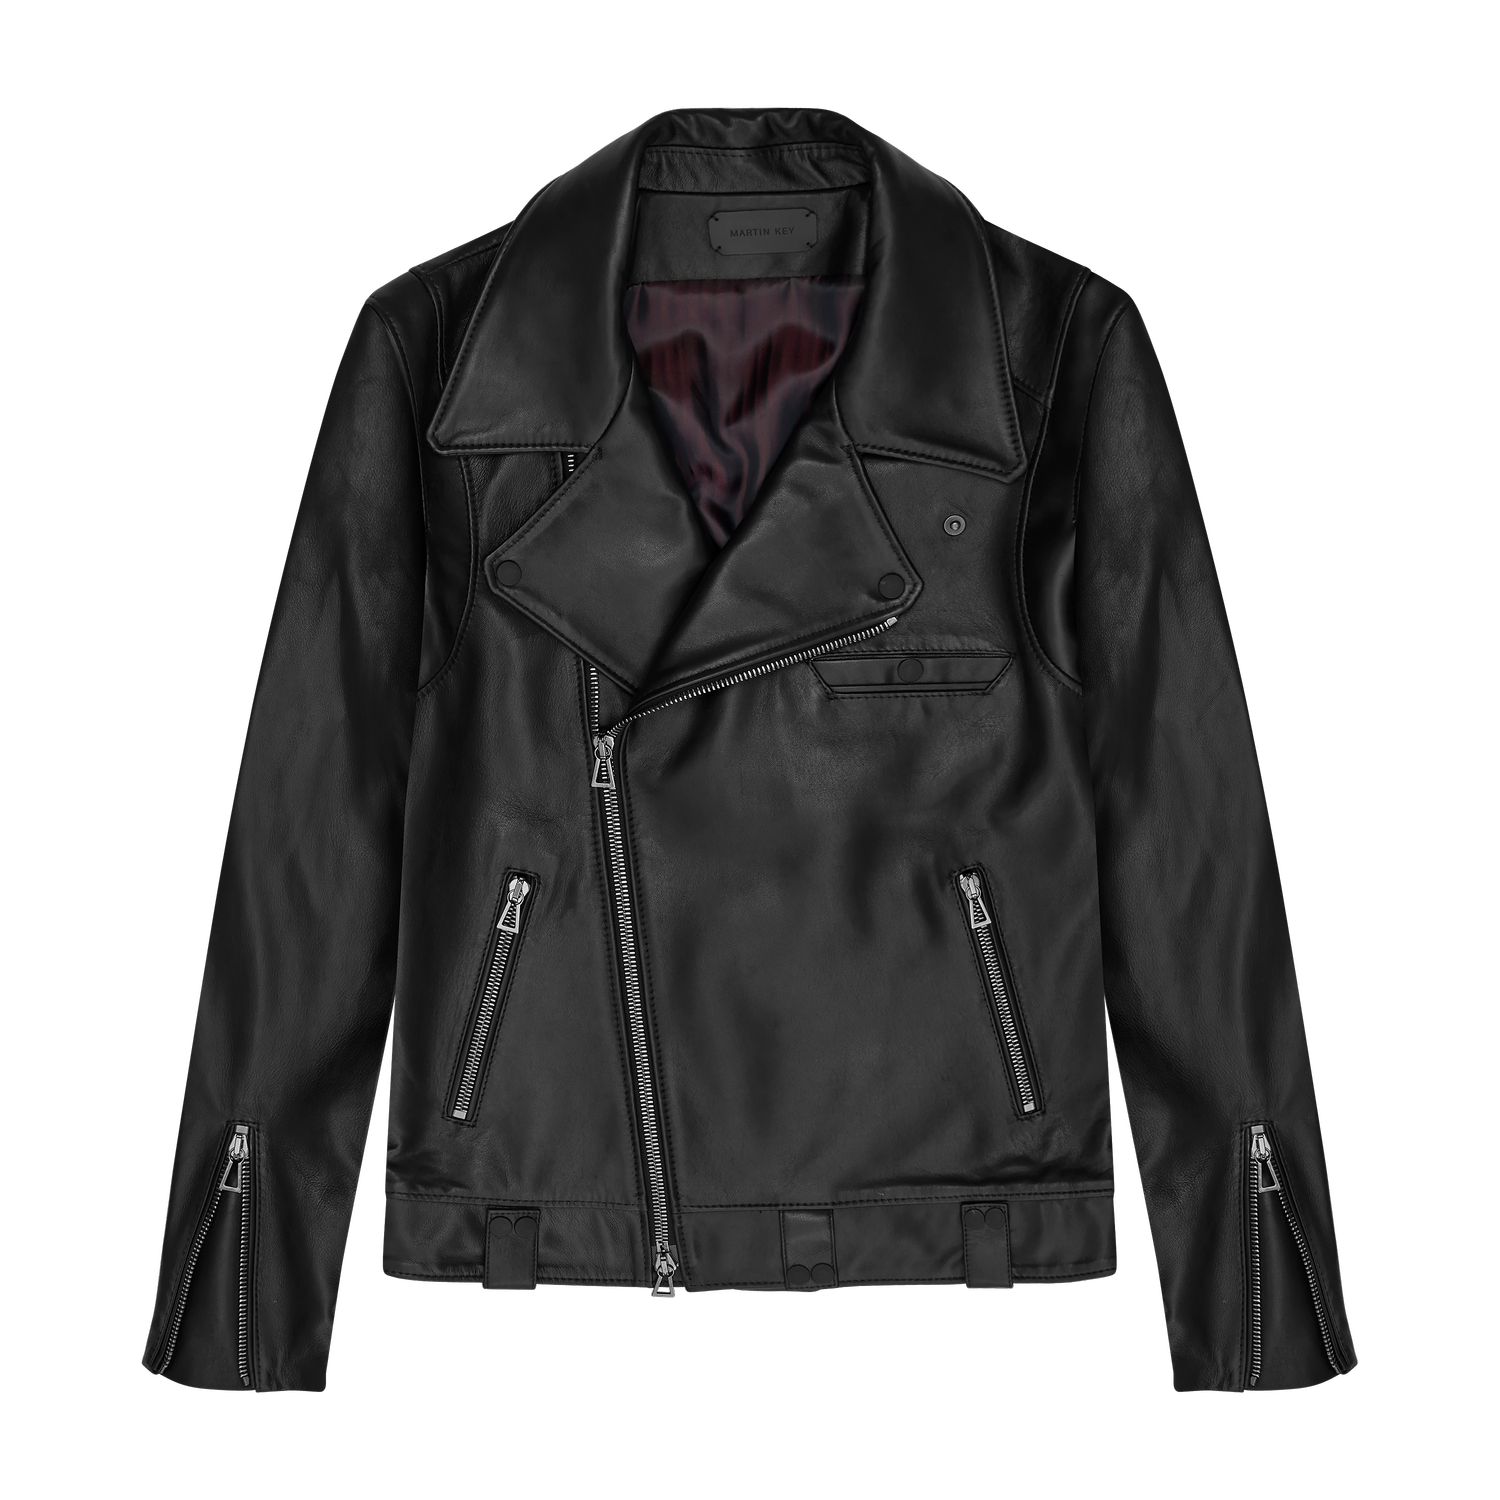 Leather jacket - Brooklyn by Martin Key